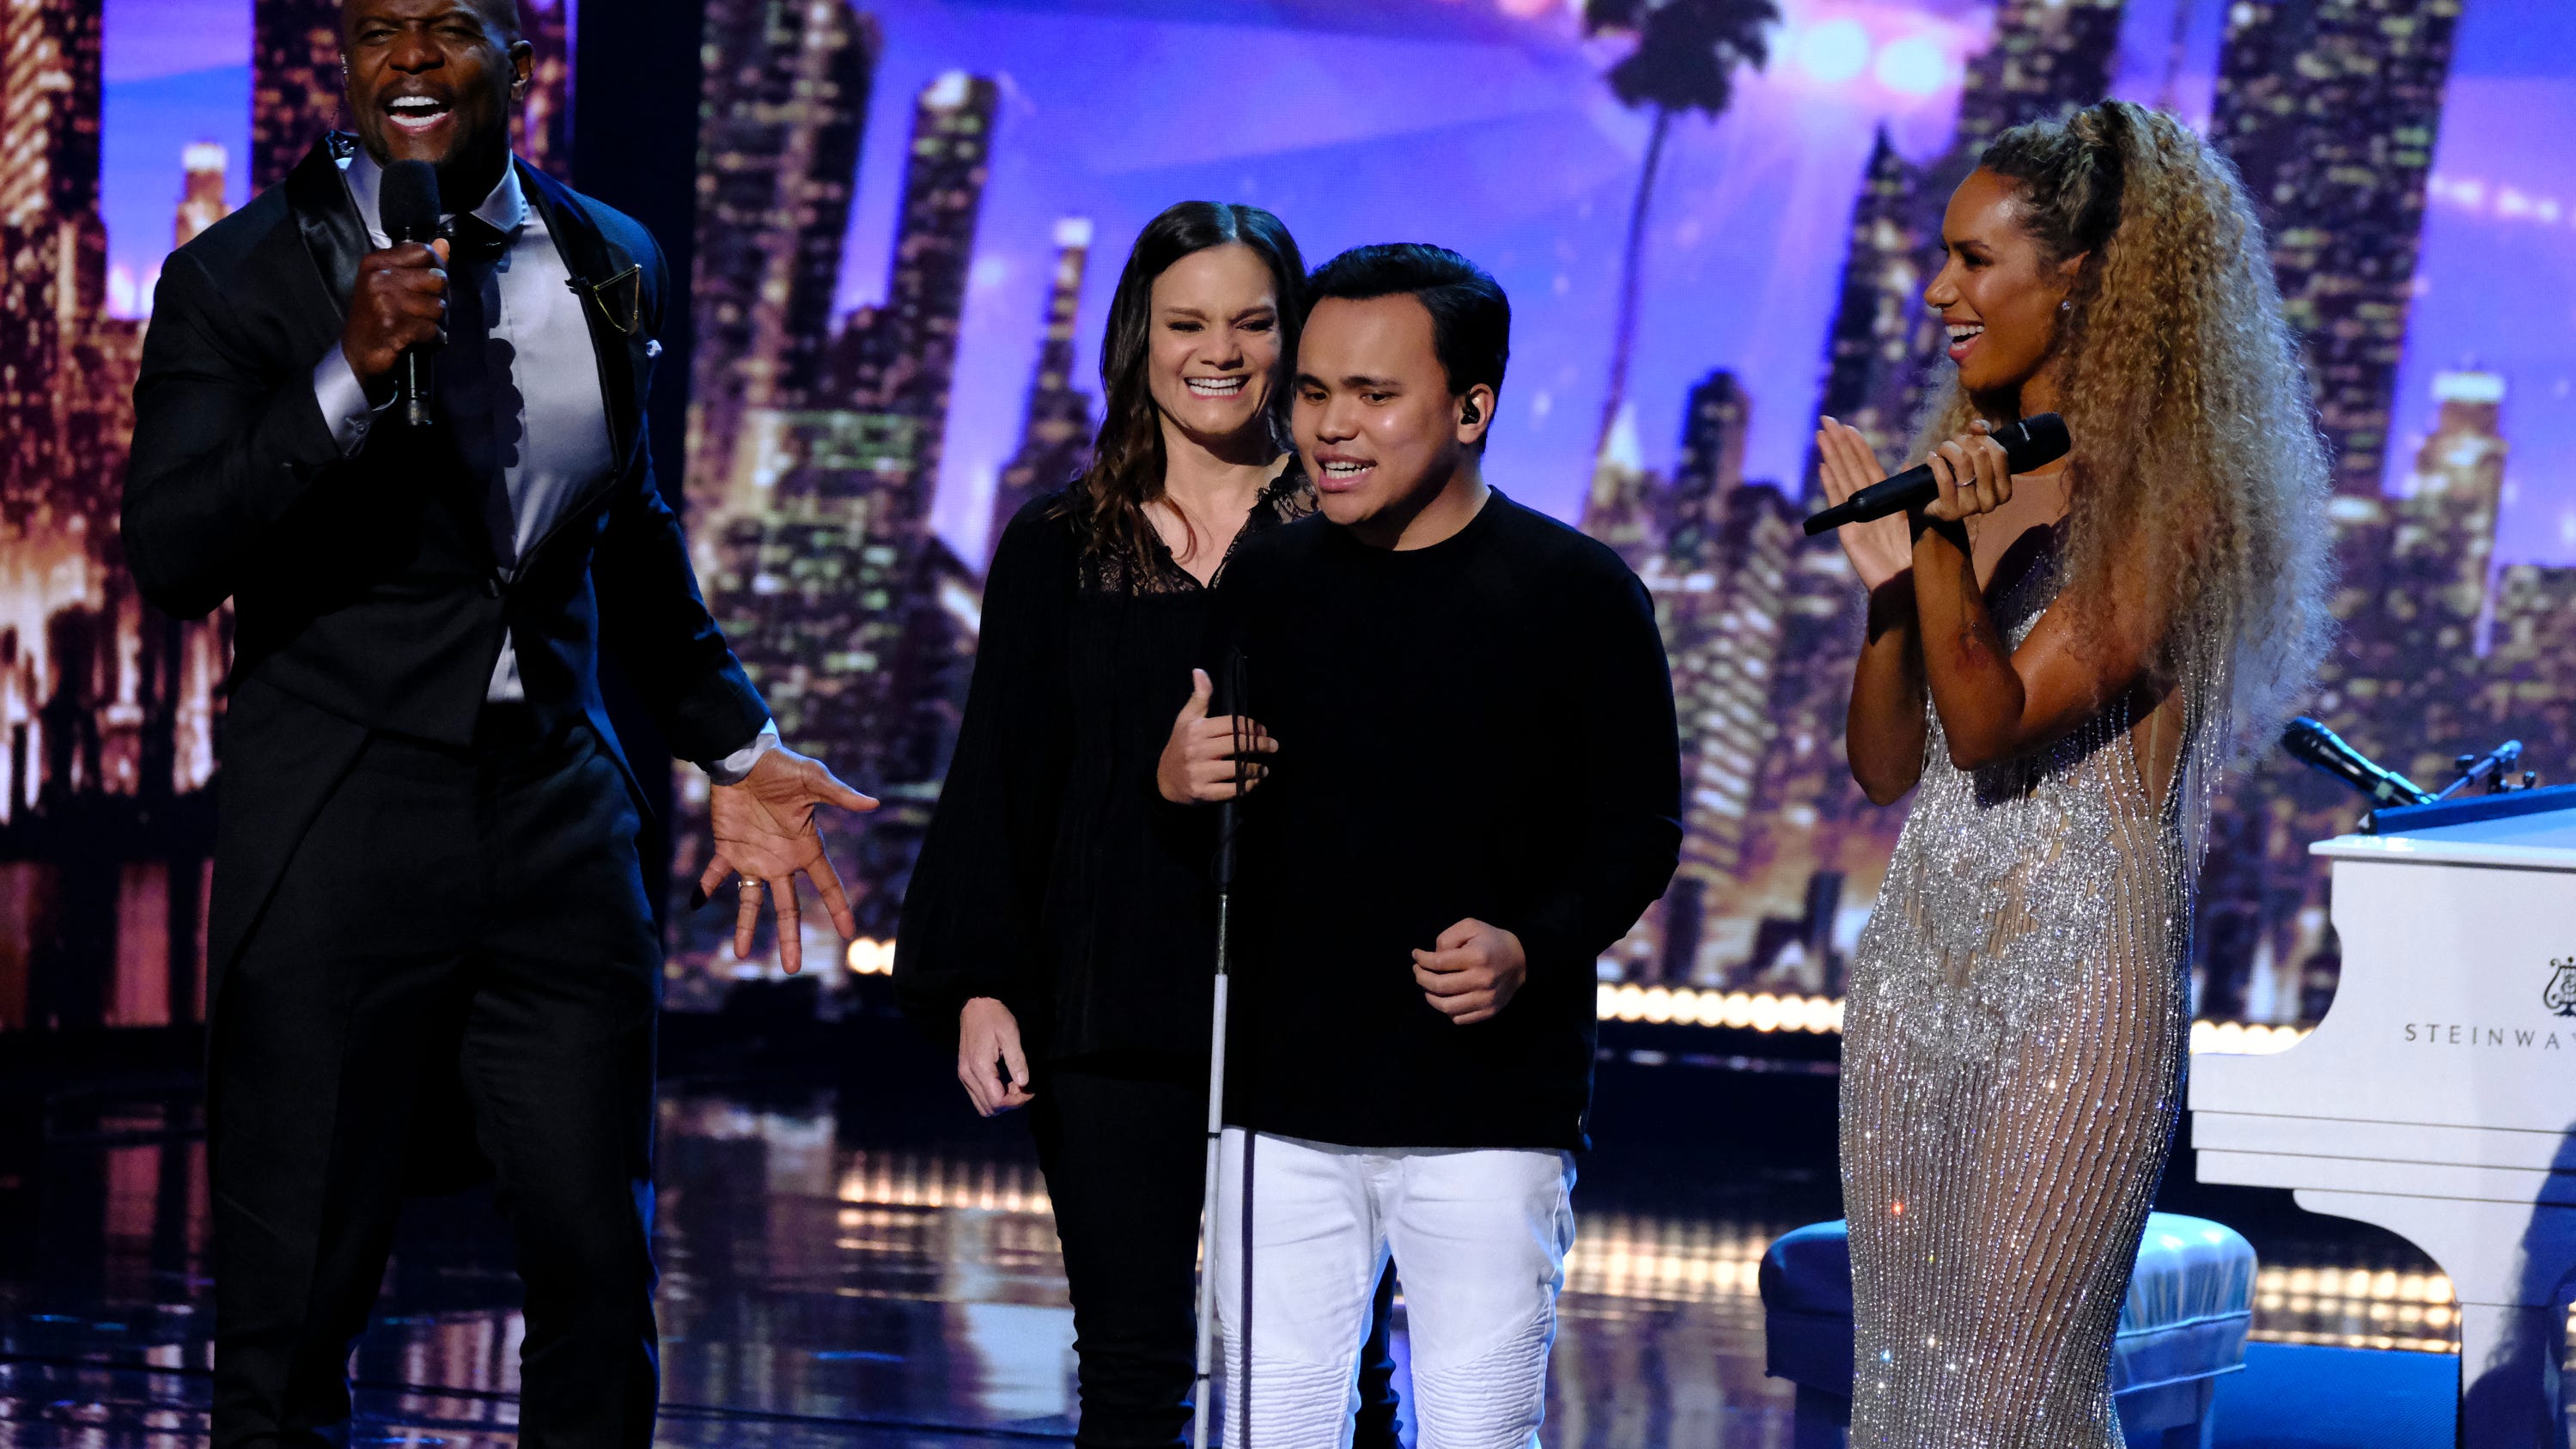 America's Got Talent' crowns Kodi Lee Season 14 winner